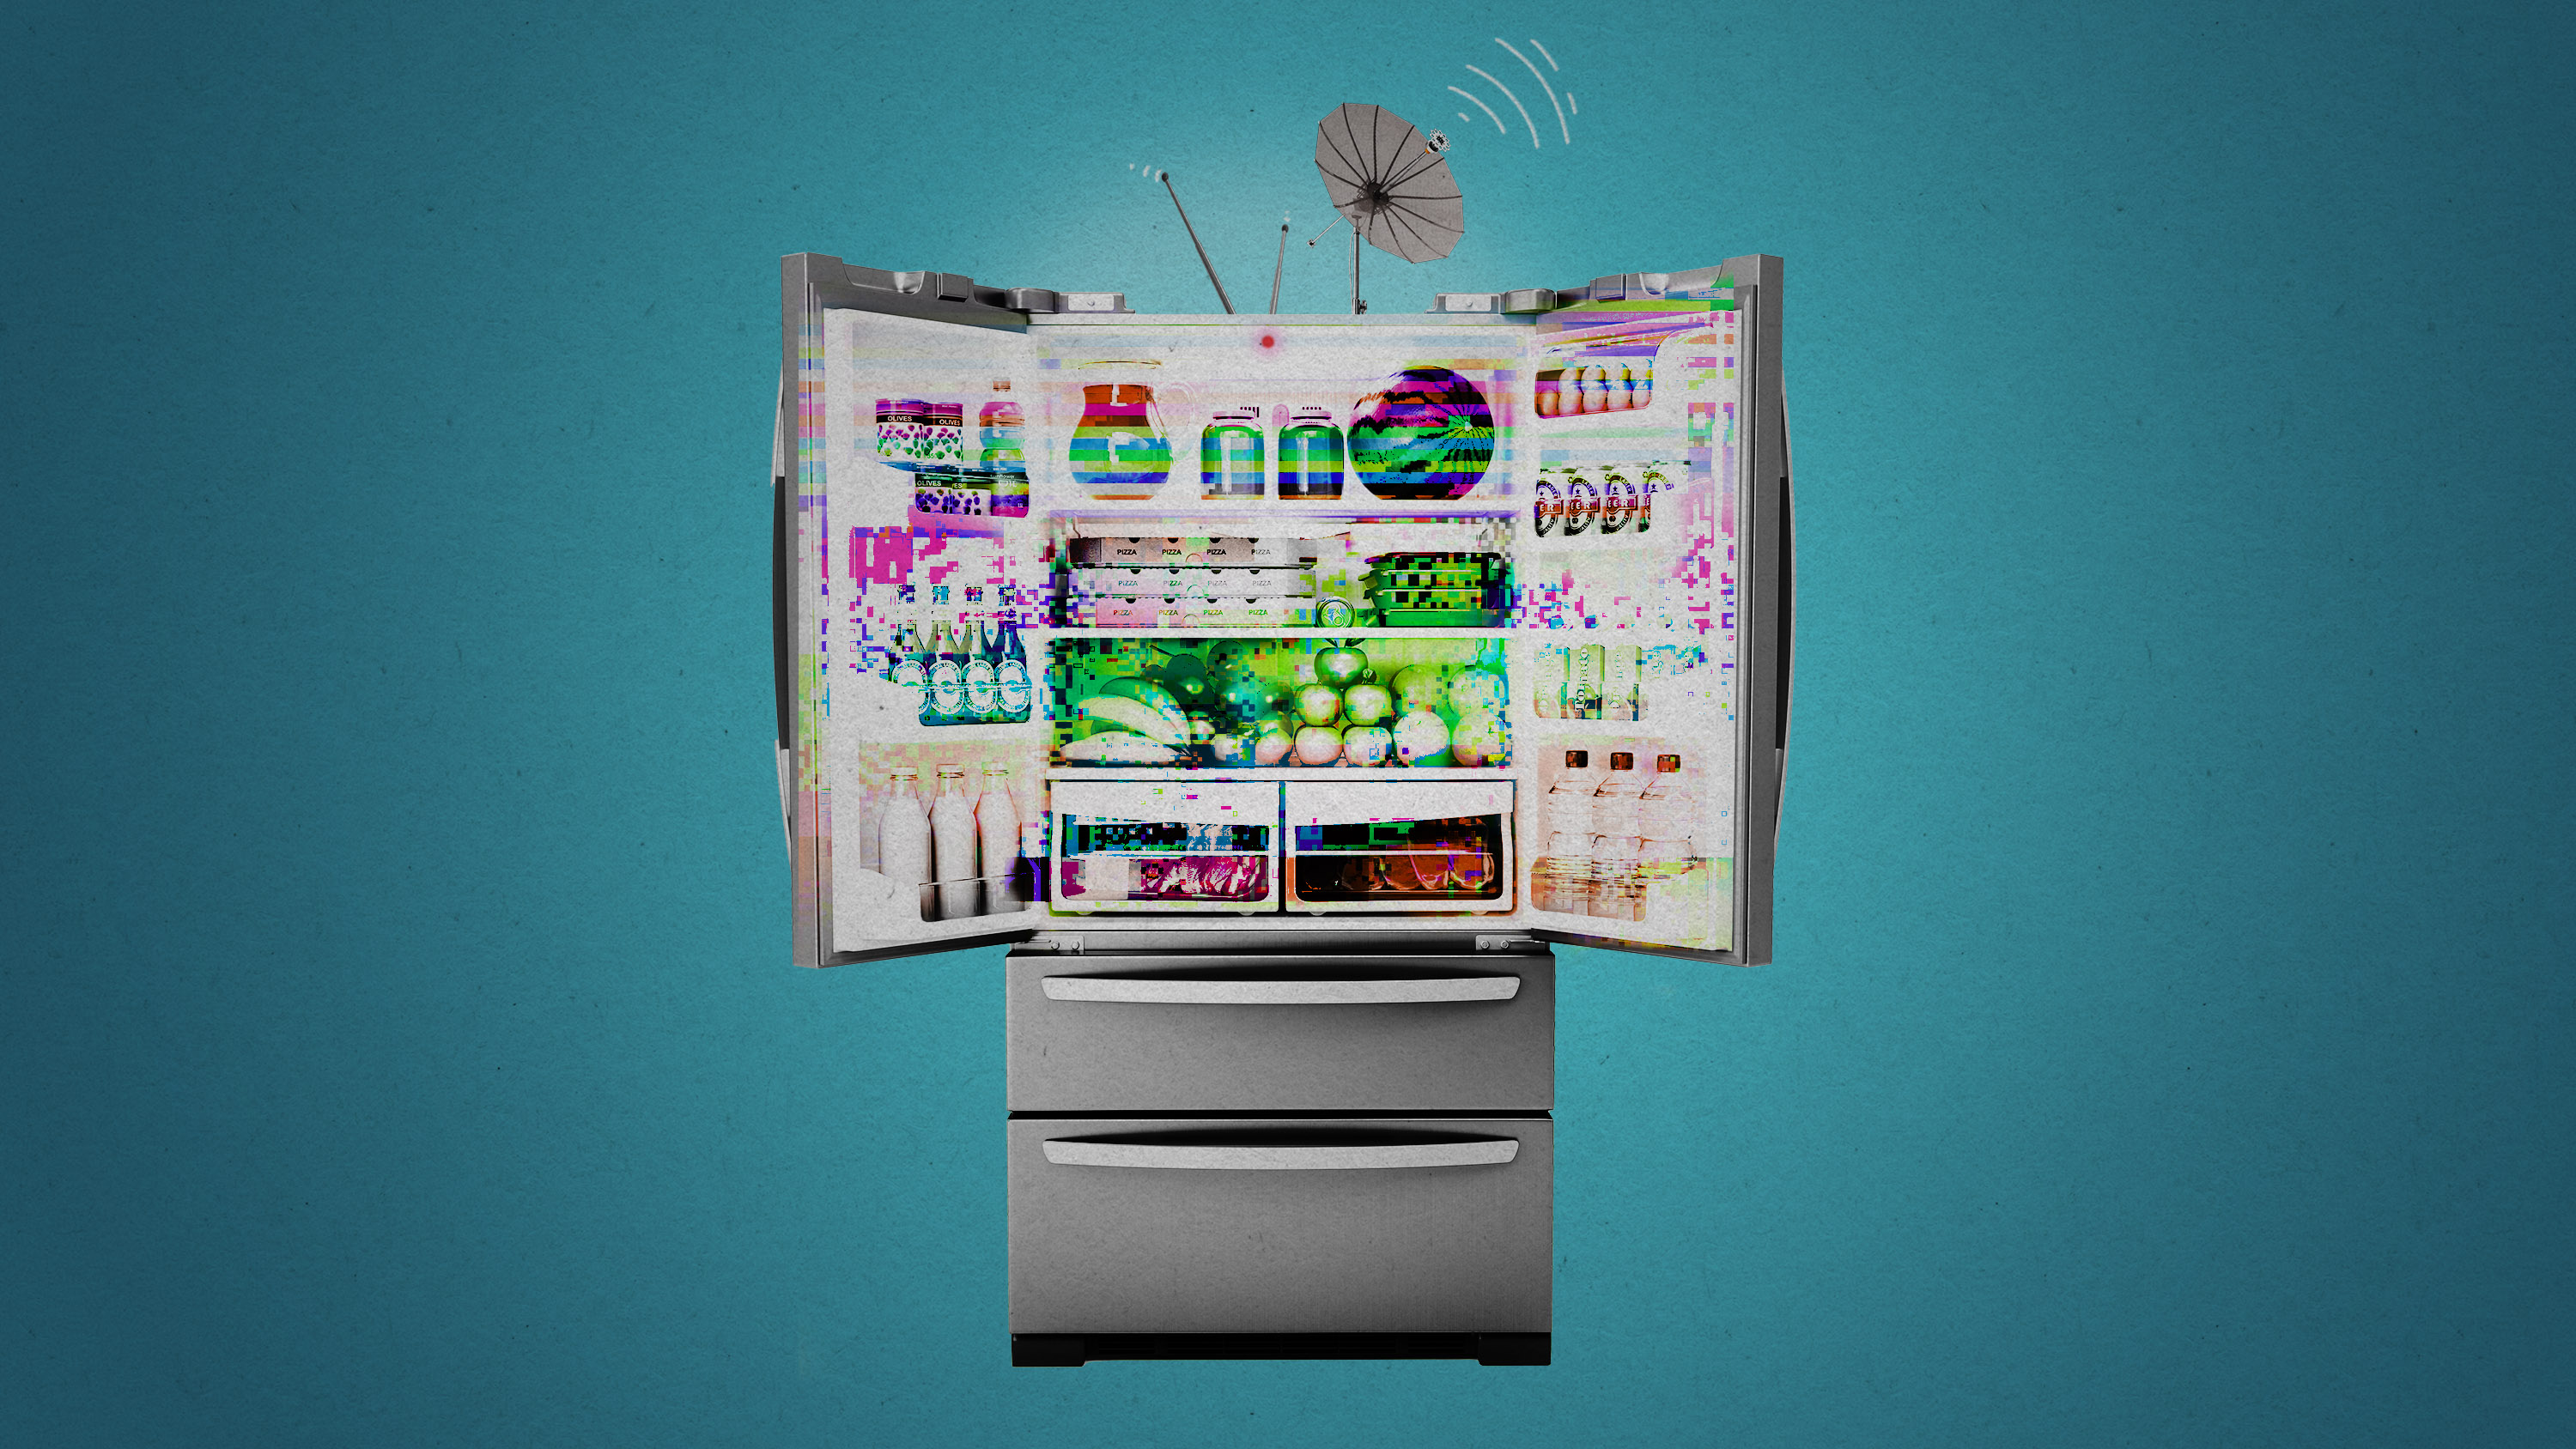 hacked smart fridge with antennae